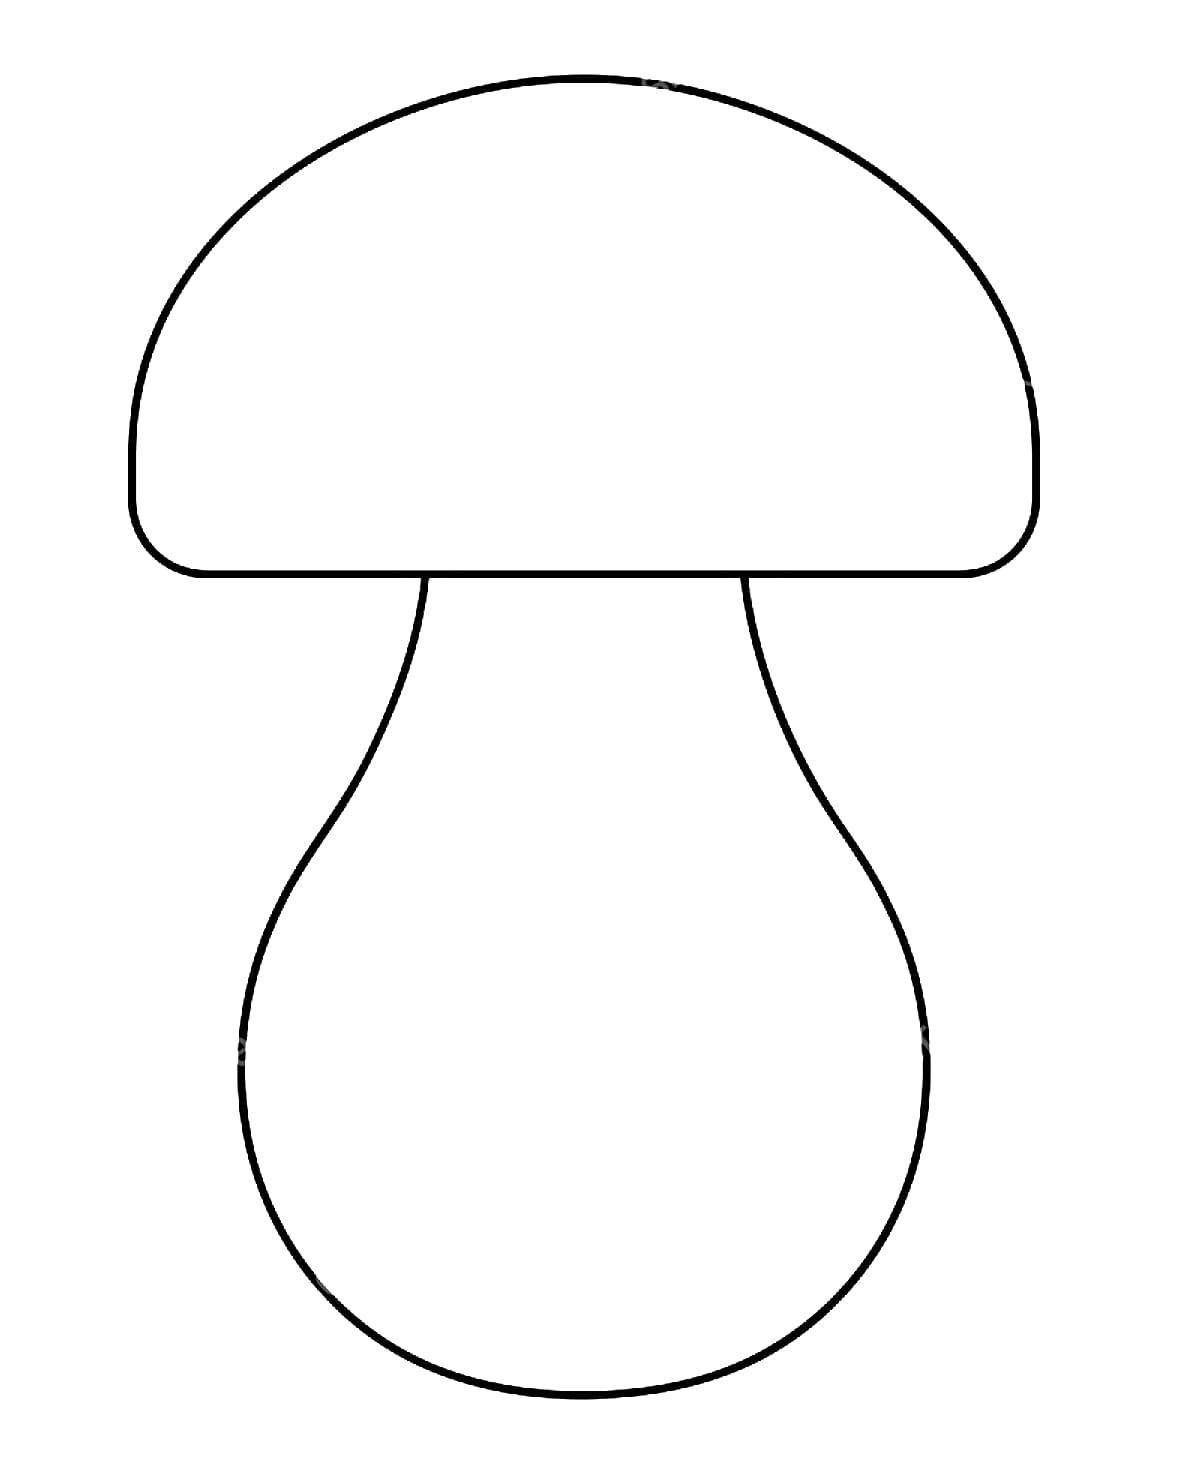 Desenhos de Cogumelos para colorir - Bora Colorir